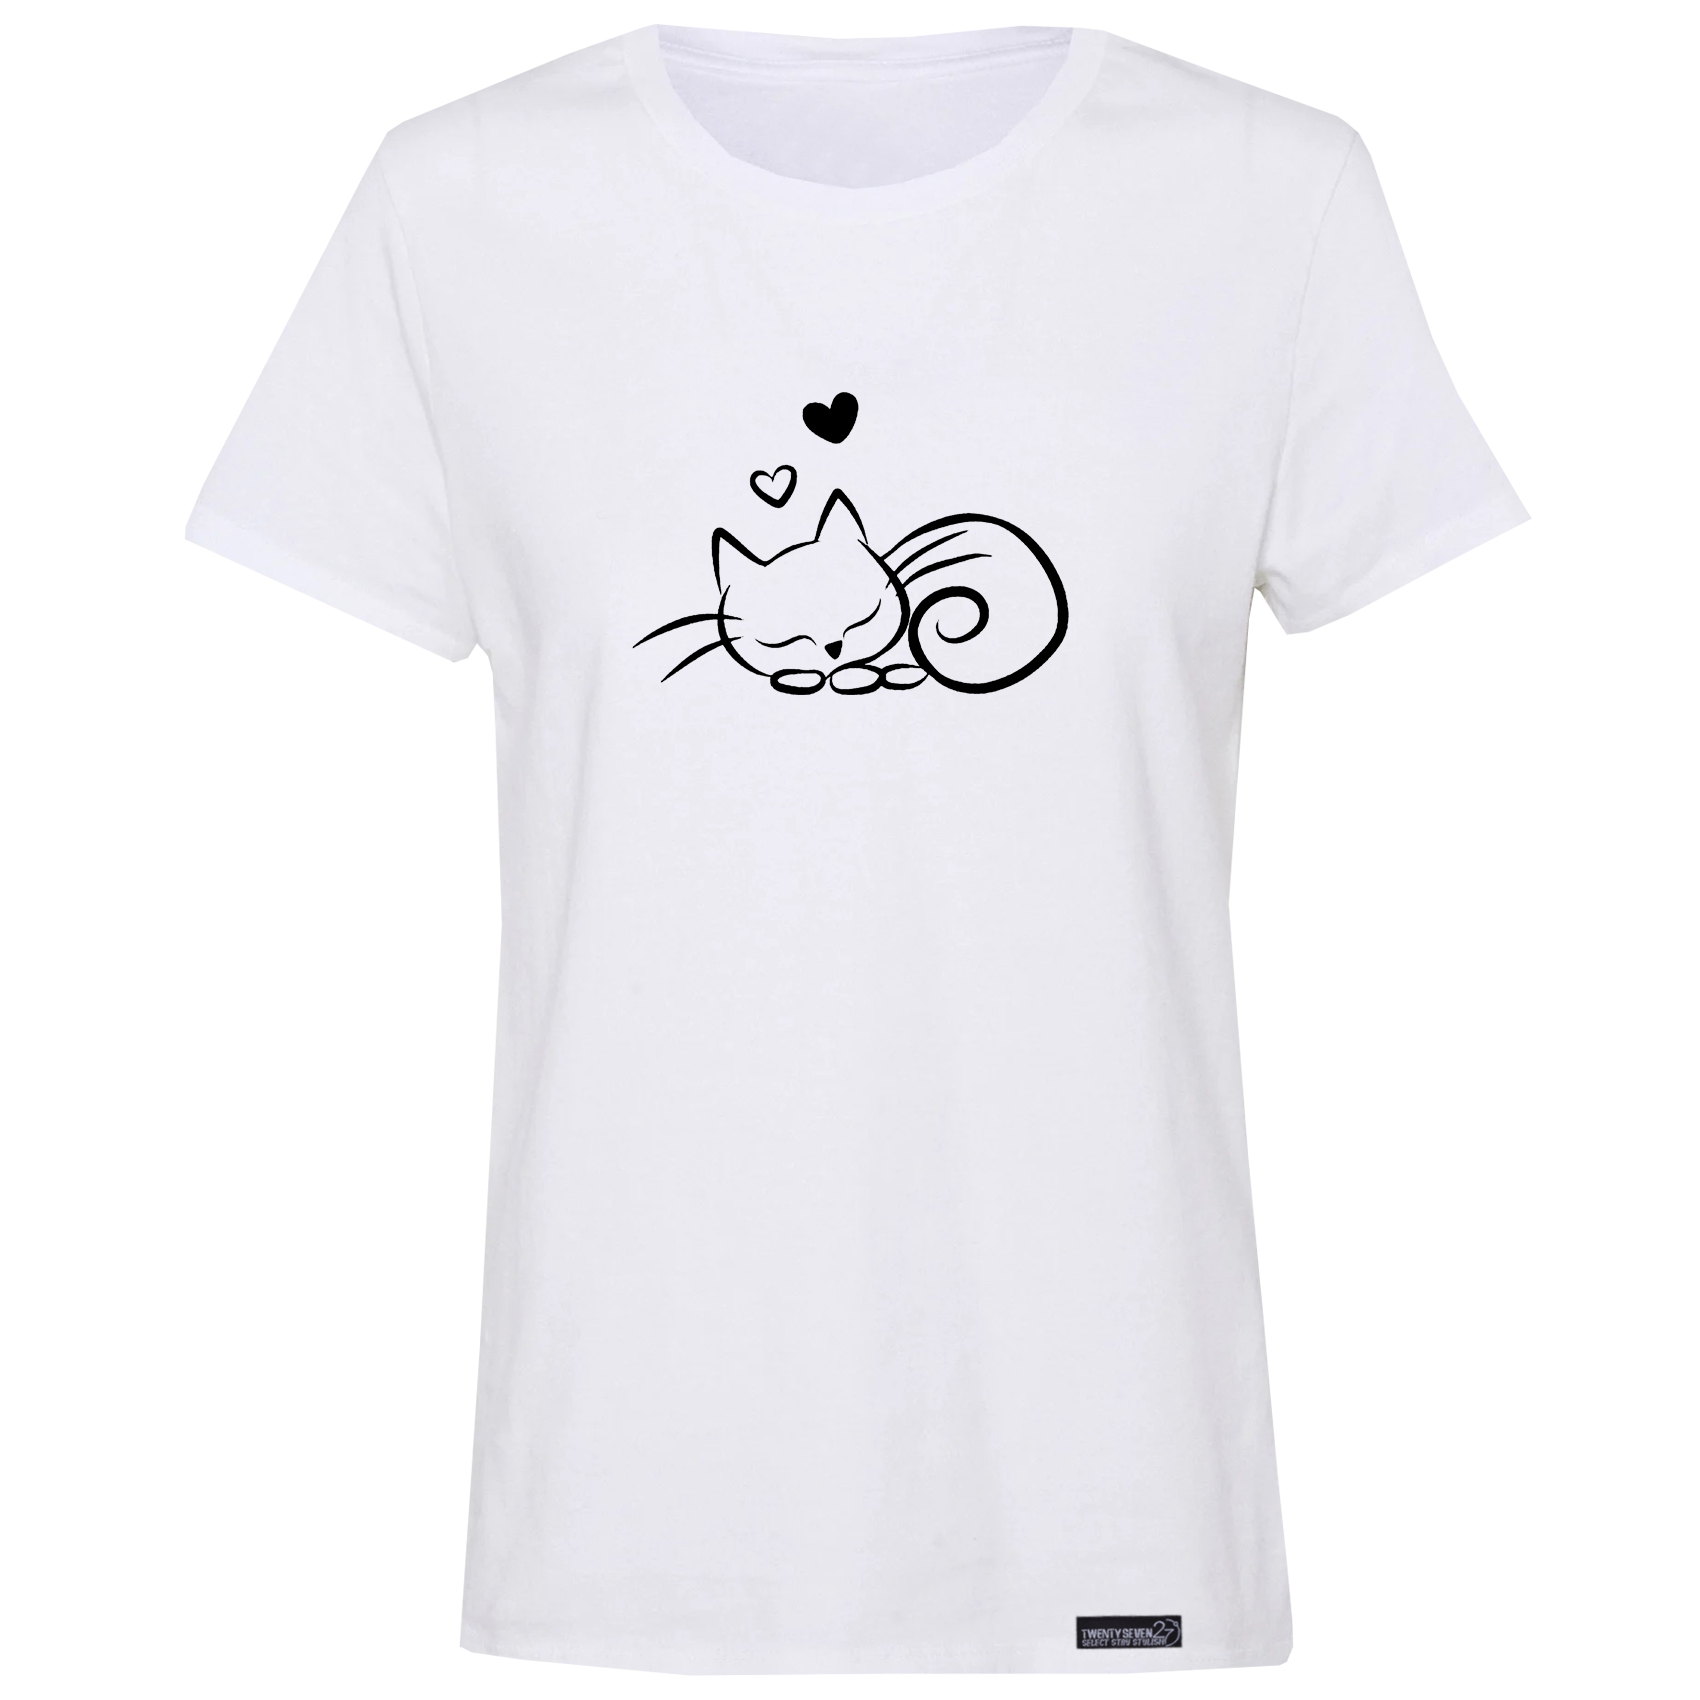 تی شرت آستین کوتاه زنانه 27 مدل گربه کد RN550 -  - 2